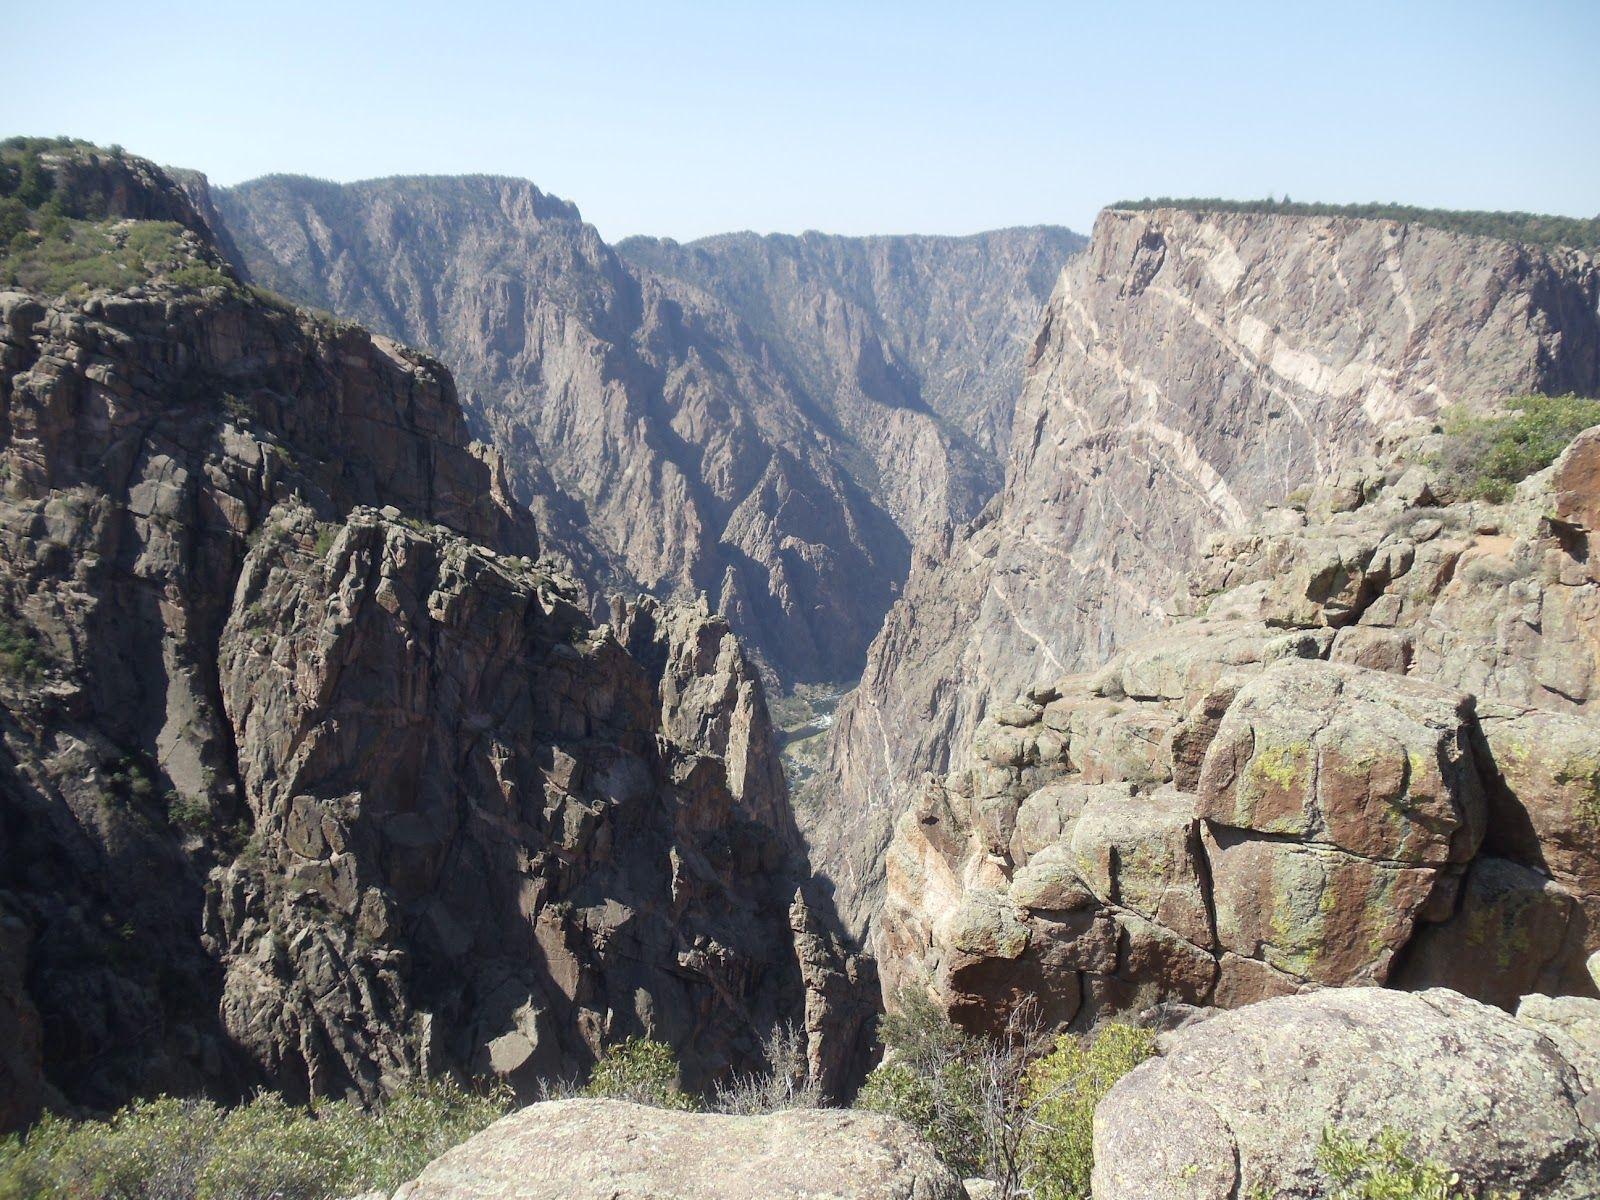 RV A GOGO: Black Canyon Of The Gunnison National Park, Colorado